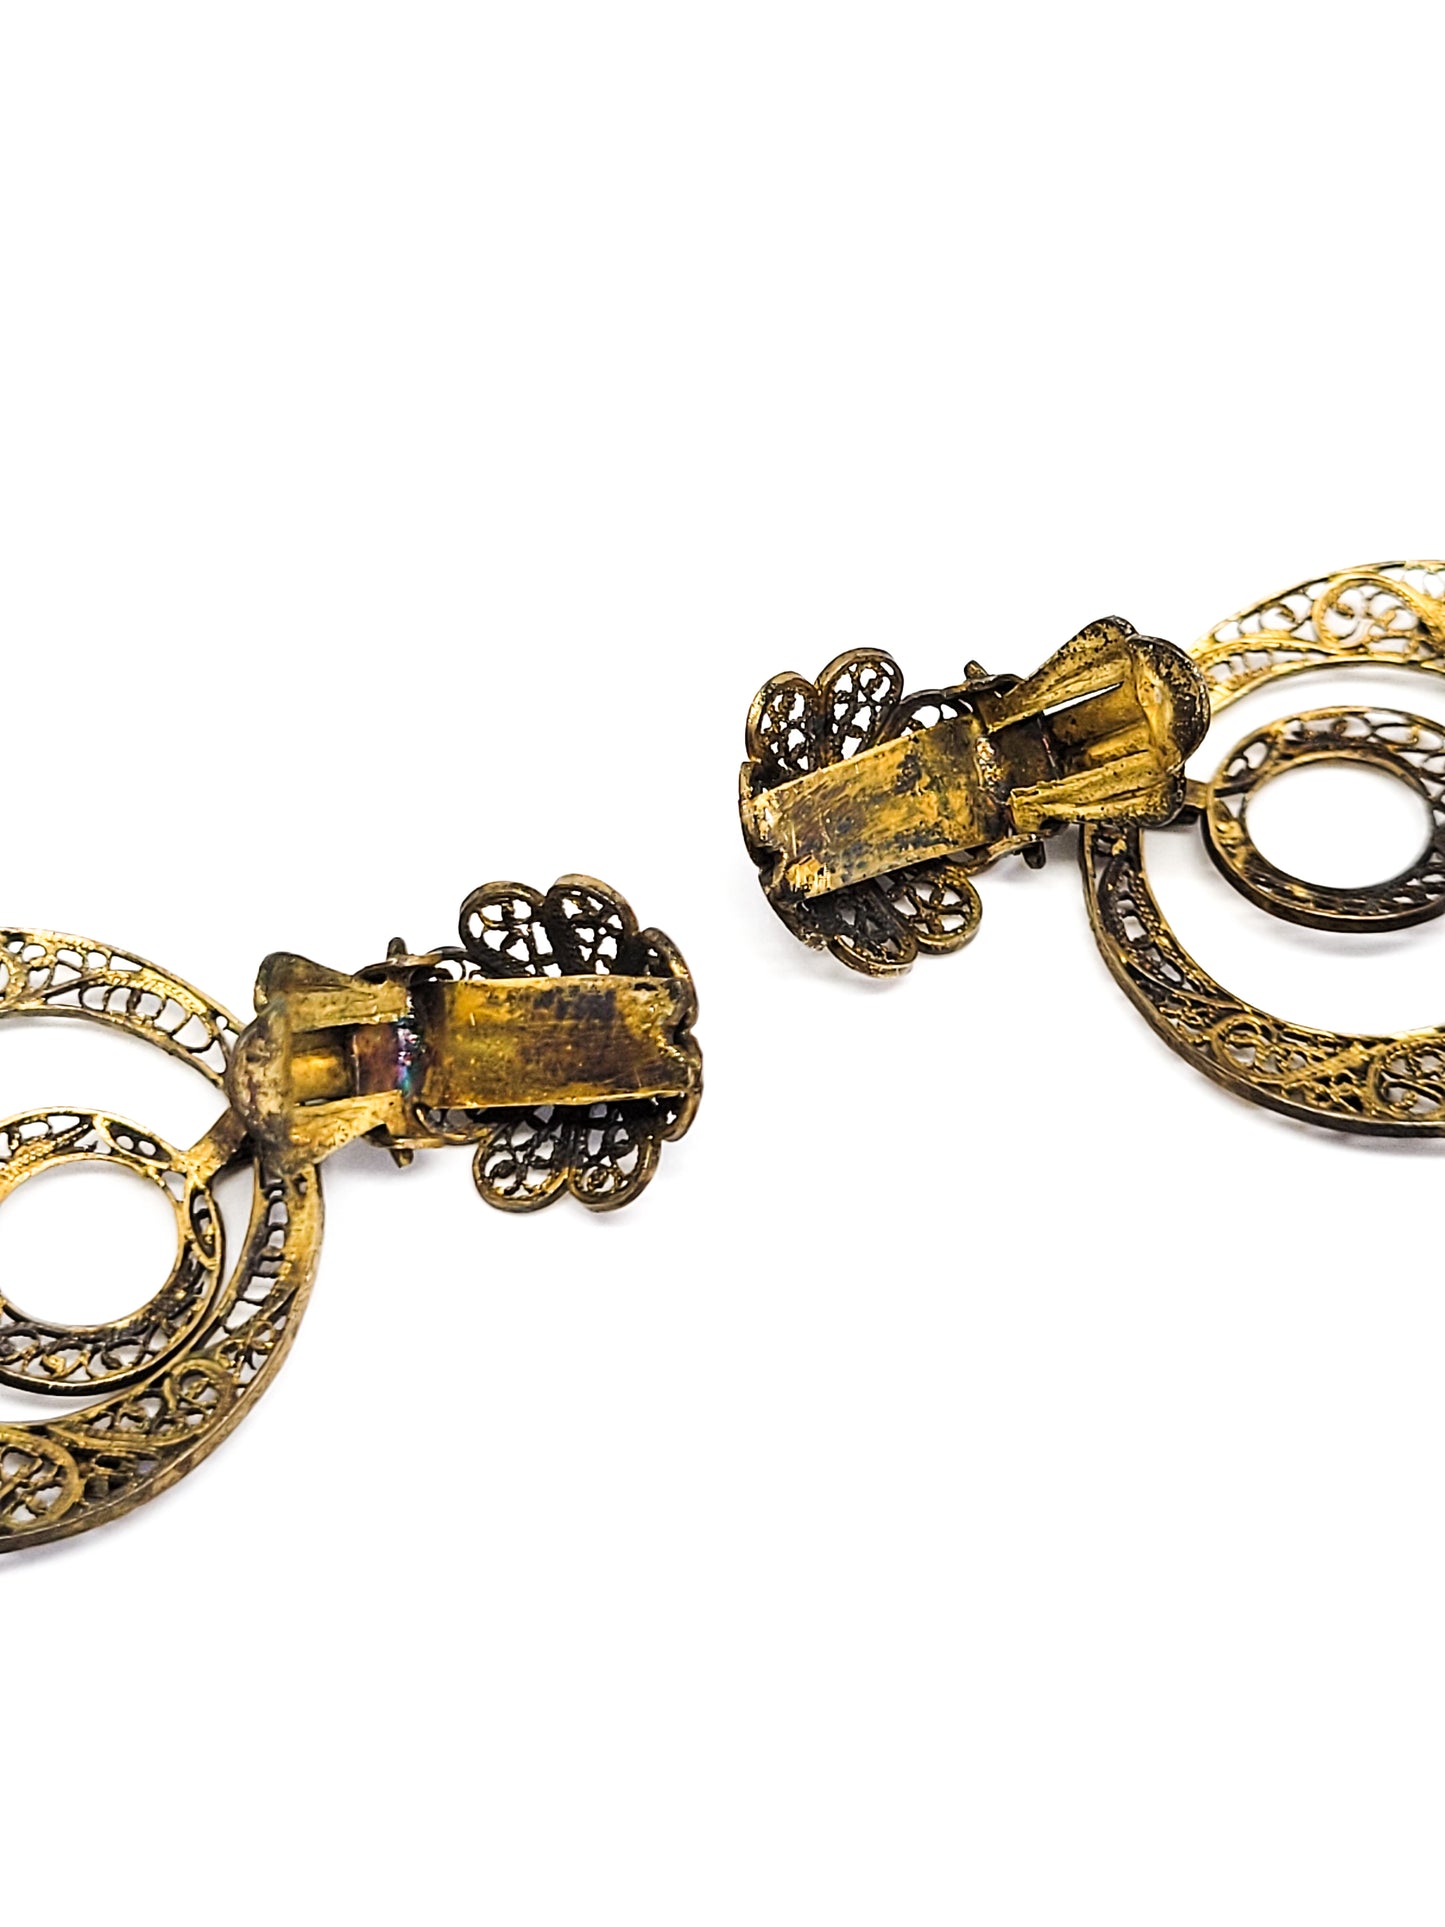 Zeeuwse Knoop Long antique gold over Sterling Silver Spun Filigree Dangle Earrings